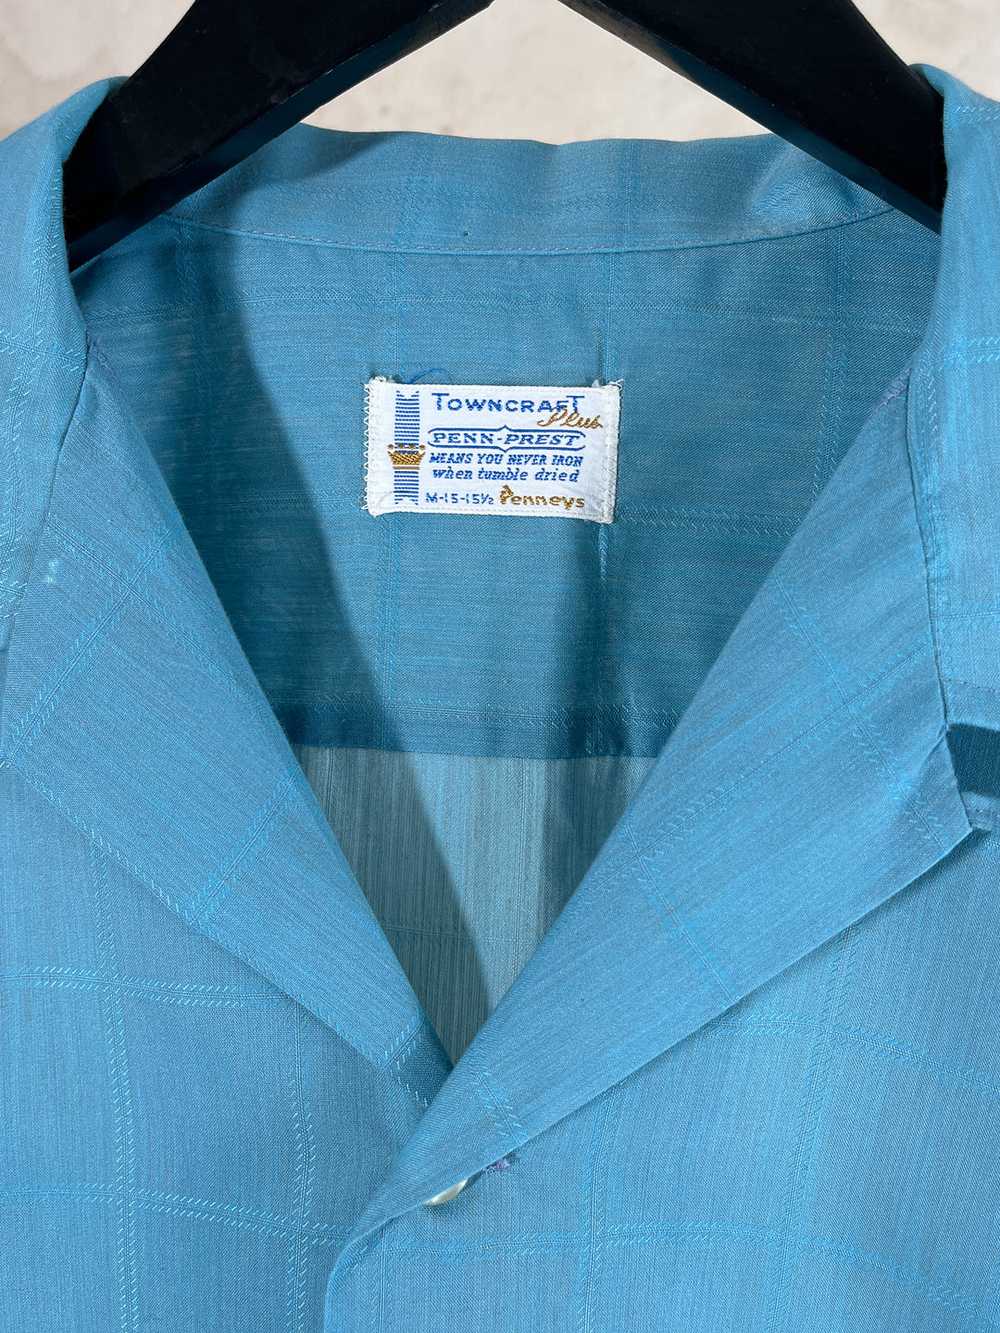 1960s Towncraft Camp Collar Short Sleeve Shirt - image 3